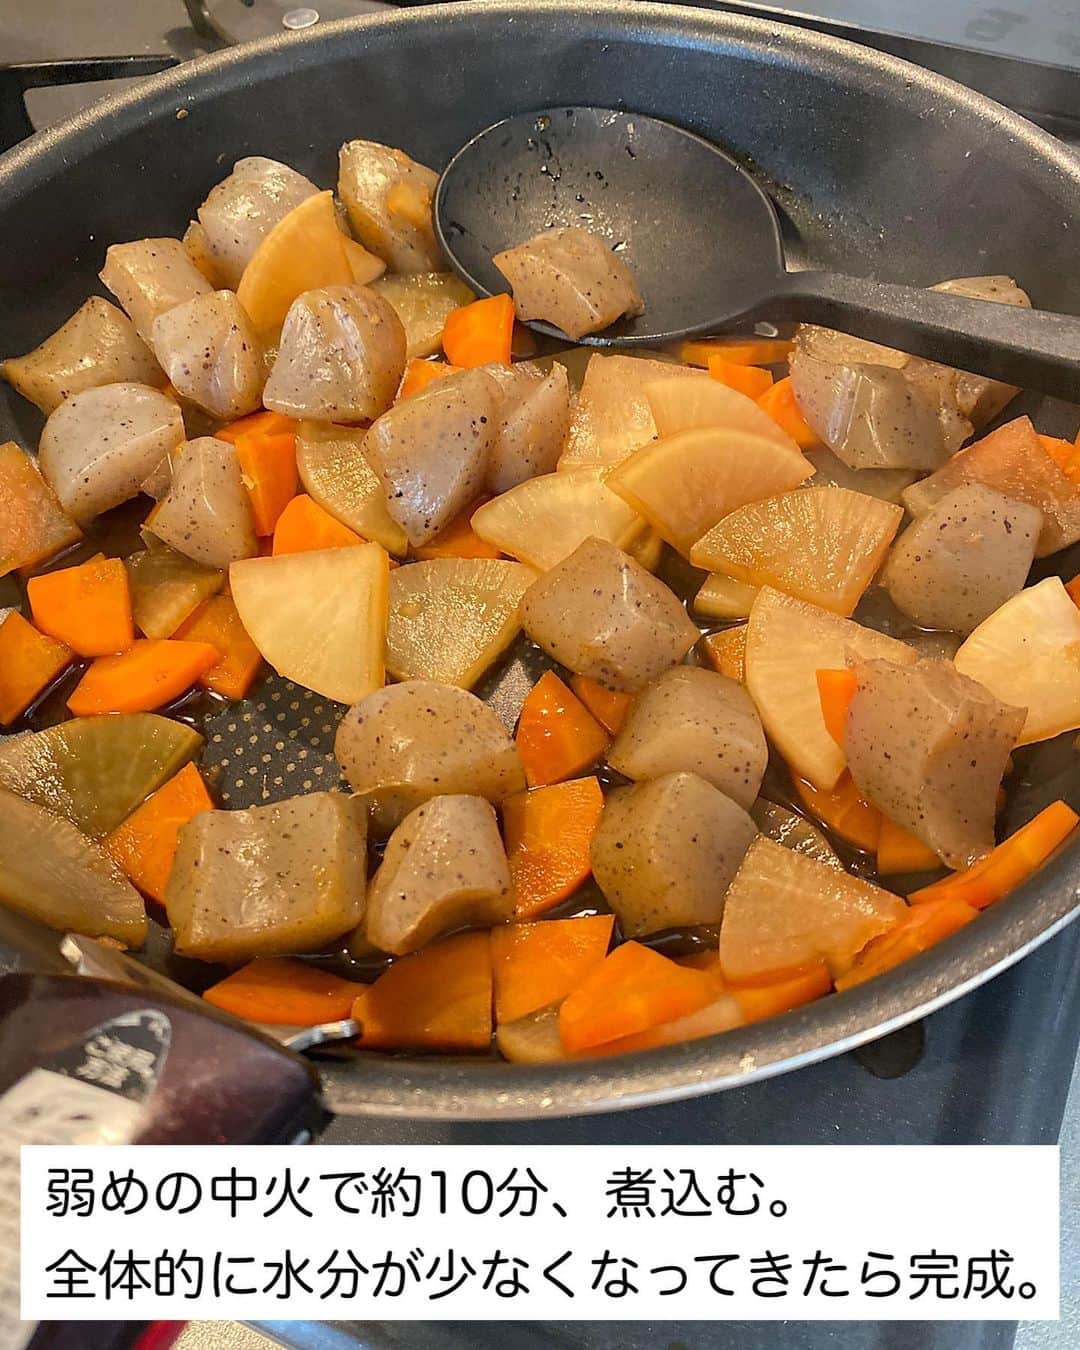 山本菜月さんのインスタグラム写真 - (山本菜月Instagram)「⁡ ⁡ ⁡ ⁡ ┈┈┈┈┈┈┈┈┈┈┈••✼ 作り置きにおすすめ 大根と人参の和風煮 ┈┈┈┈┈┈┈┈┈┈┈••✼ ⁡ ⁡ ⁡ こんにちは☀︎ 菜月 (@zubora_meshi_ )です！ ⁡ 今日は時短で作る煮物レシピを ご紹介させてください♡ ⁡ 野菜はレンチンして煮込み時間を短縮！ 煮物料理ですが一度冷ますことなく出来立てを 美味しく召し上がっていただけます🫕 ⁡ 時間がない日にパパッと作れるし 冷蔵保存で3日持つので ストックしておくといざという時に安心☺️ ⁡ 良かったら作ってみてくださいね😌✨ ⁡ ⁡ ⁡ ｡.ꕤ⌒⌒⌒⌒⌒⌒ꕤ⌒⌒⌒⌒⌒⌒ꕤ.｡  　 ⁡ ⁡ ⁡ 【2人分】 大根 5cm にんじん 1/3本(上部) こんにゃく 1枚 (アク抜き不要のものを使用) ⚫︎水 200cc ⚫︎醤油、みりん、酒 各大さじ2 ⚫︎砂糖 大さじ1 ⚫︎だしの素 小さじ1 ⚫︎生姜チューブ 小さじ1 ⁡ 【作り方】 ①大根と人参の皮を剥き 　0.5cm幅のイチョウ切りにし 　耐熱皿にのせてふんわりラップをし 　レンジ600w5分加熱する。 ②①とこんにゃく(スプーンでちぎる) 　⚫︎を入れ軽く混ぜ、中火で沸々させる。 ③弱めの中火で約10分加熱し 　水分が少なくなってきたら完成。 ⁡ 【メモ】 出来立てすぐに食べてもしみしみで美味しいです！鶏肉、豚肉を加えて作るのもおすすめ◎ ⁡ ⁡ ⁡ ⁡ ｡.ꕤ⌒⌒⌒⌒⌒⌒ꕤ⌒⌒⌒⌒⌒⌒ꕤ.｡ ⁡ ⁡ ⁡ ⁡ 【レシピ本を出版しました】 ⁡ ⁡ 📙書籍タイトル ┈┈┈┈┈┈┈┈┈┈┈┈┈┈┈┈┈┈ もはや動けないって時はこれつくろ! とびきり美味しい疲れ果てごはん ┈┈┈┈┈┈┈┈┈┈┈┈┈┈┈┈┈┈ ⁡ ⁡ ⁡ 🌼発売日  : 2023年9月27日(水)  : Amazon・楽天ブックスにて開始中 ⁡ ⁡ ⁡ 🔍ご購入  :  わたしのプロフィールリンク 　もしくはハイライト【レシピ本】に 　リンクを貼っています♩ ⁡ ⁡ ⁡ ⁡ 最後までご覧頂きありがとうございます。 是非、食レポを聞かせてくださると嬉しいです♡ ⁡ ＊NATSU KITCHEN ＊」11月4日 11時57分 - zubora_meshi_